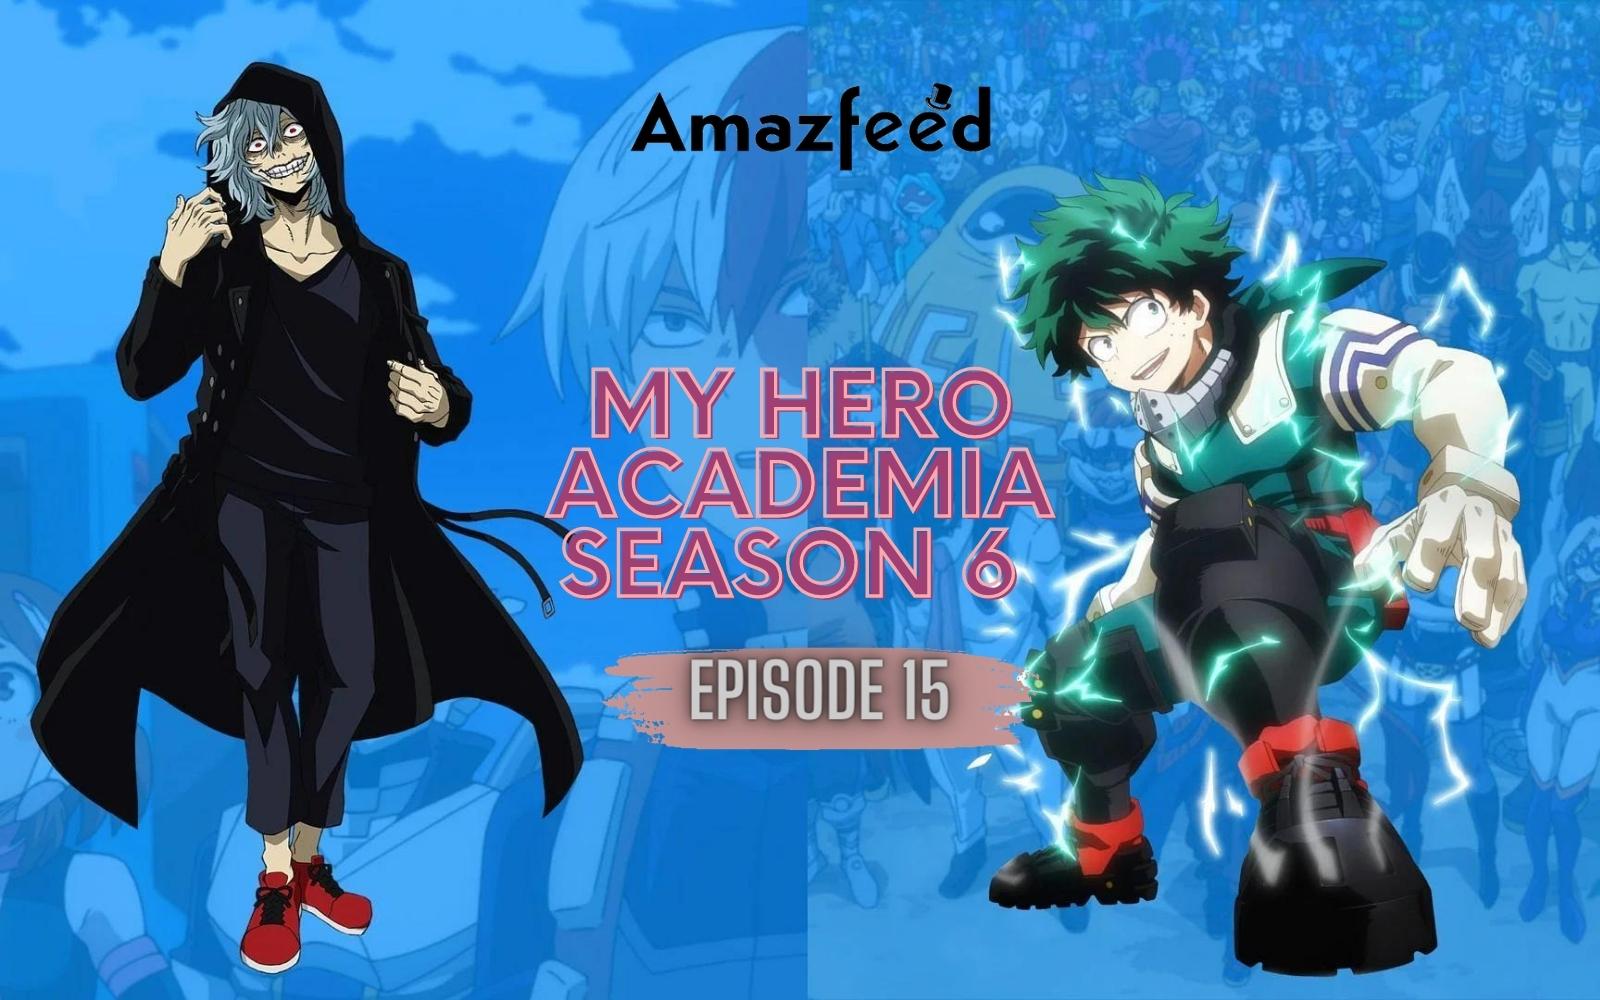 Category:Season 6 Episodes, My Hero Academia Wiki